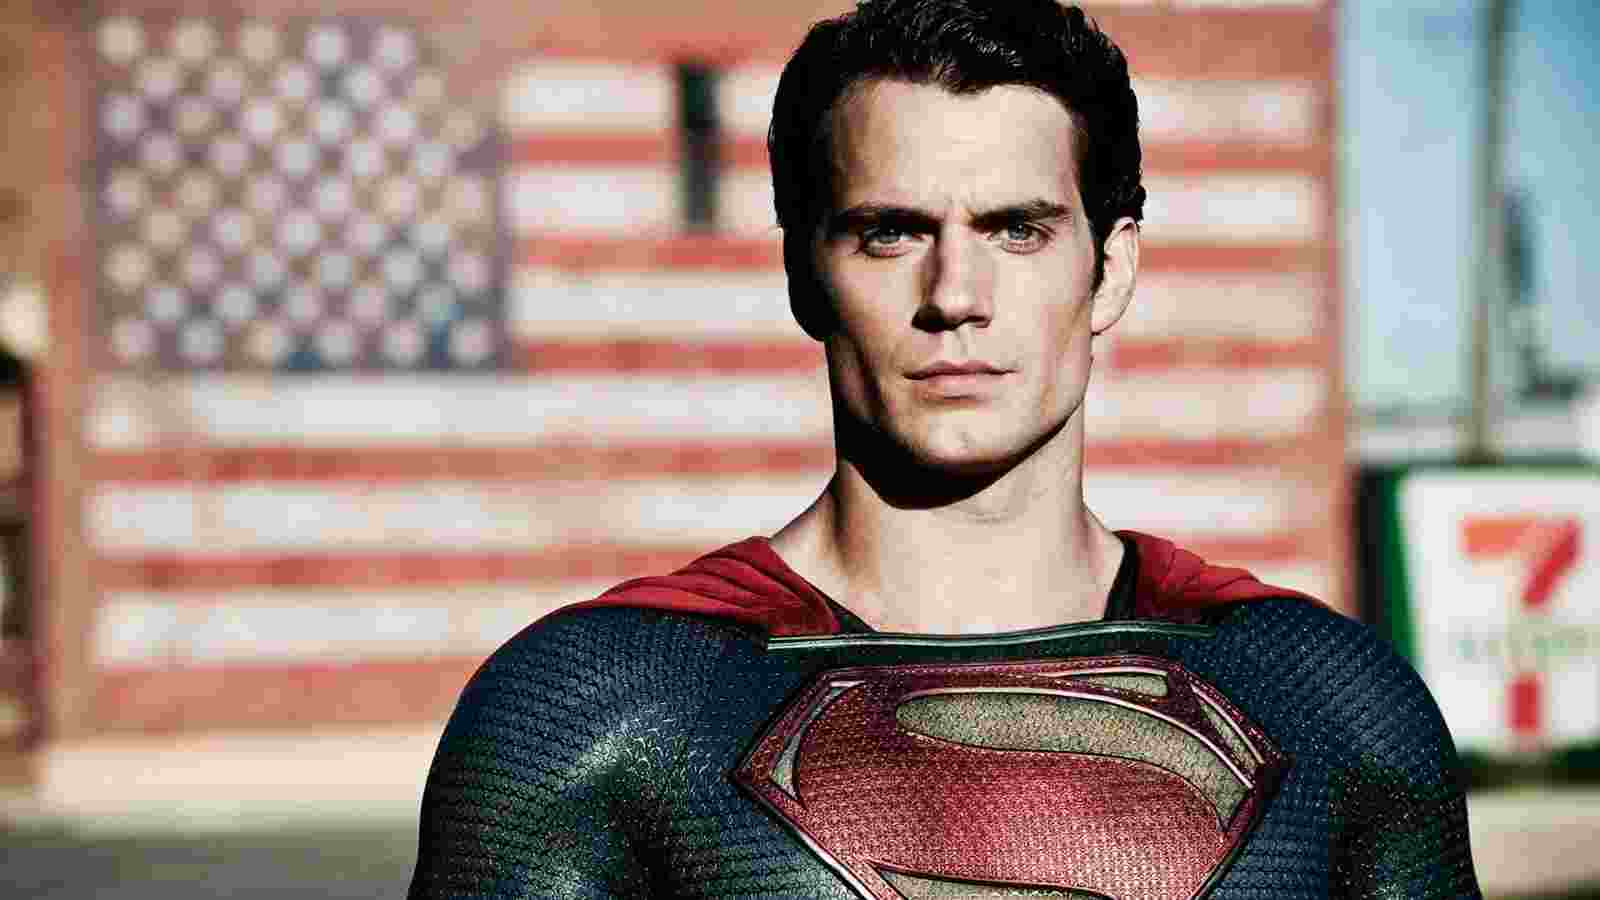 سوپرمن (Superman) از بهترین فیلم های ابرقهرمانی جهان